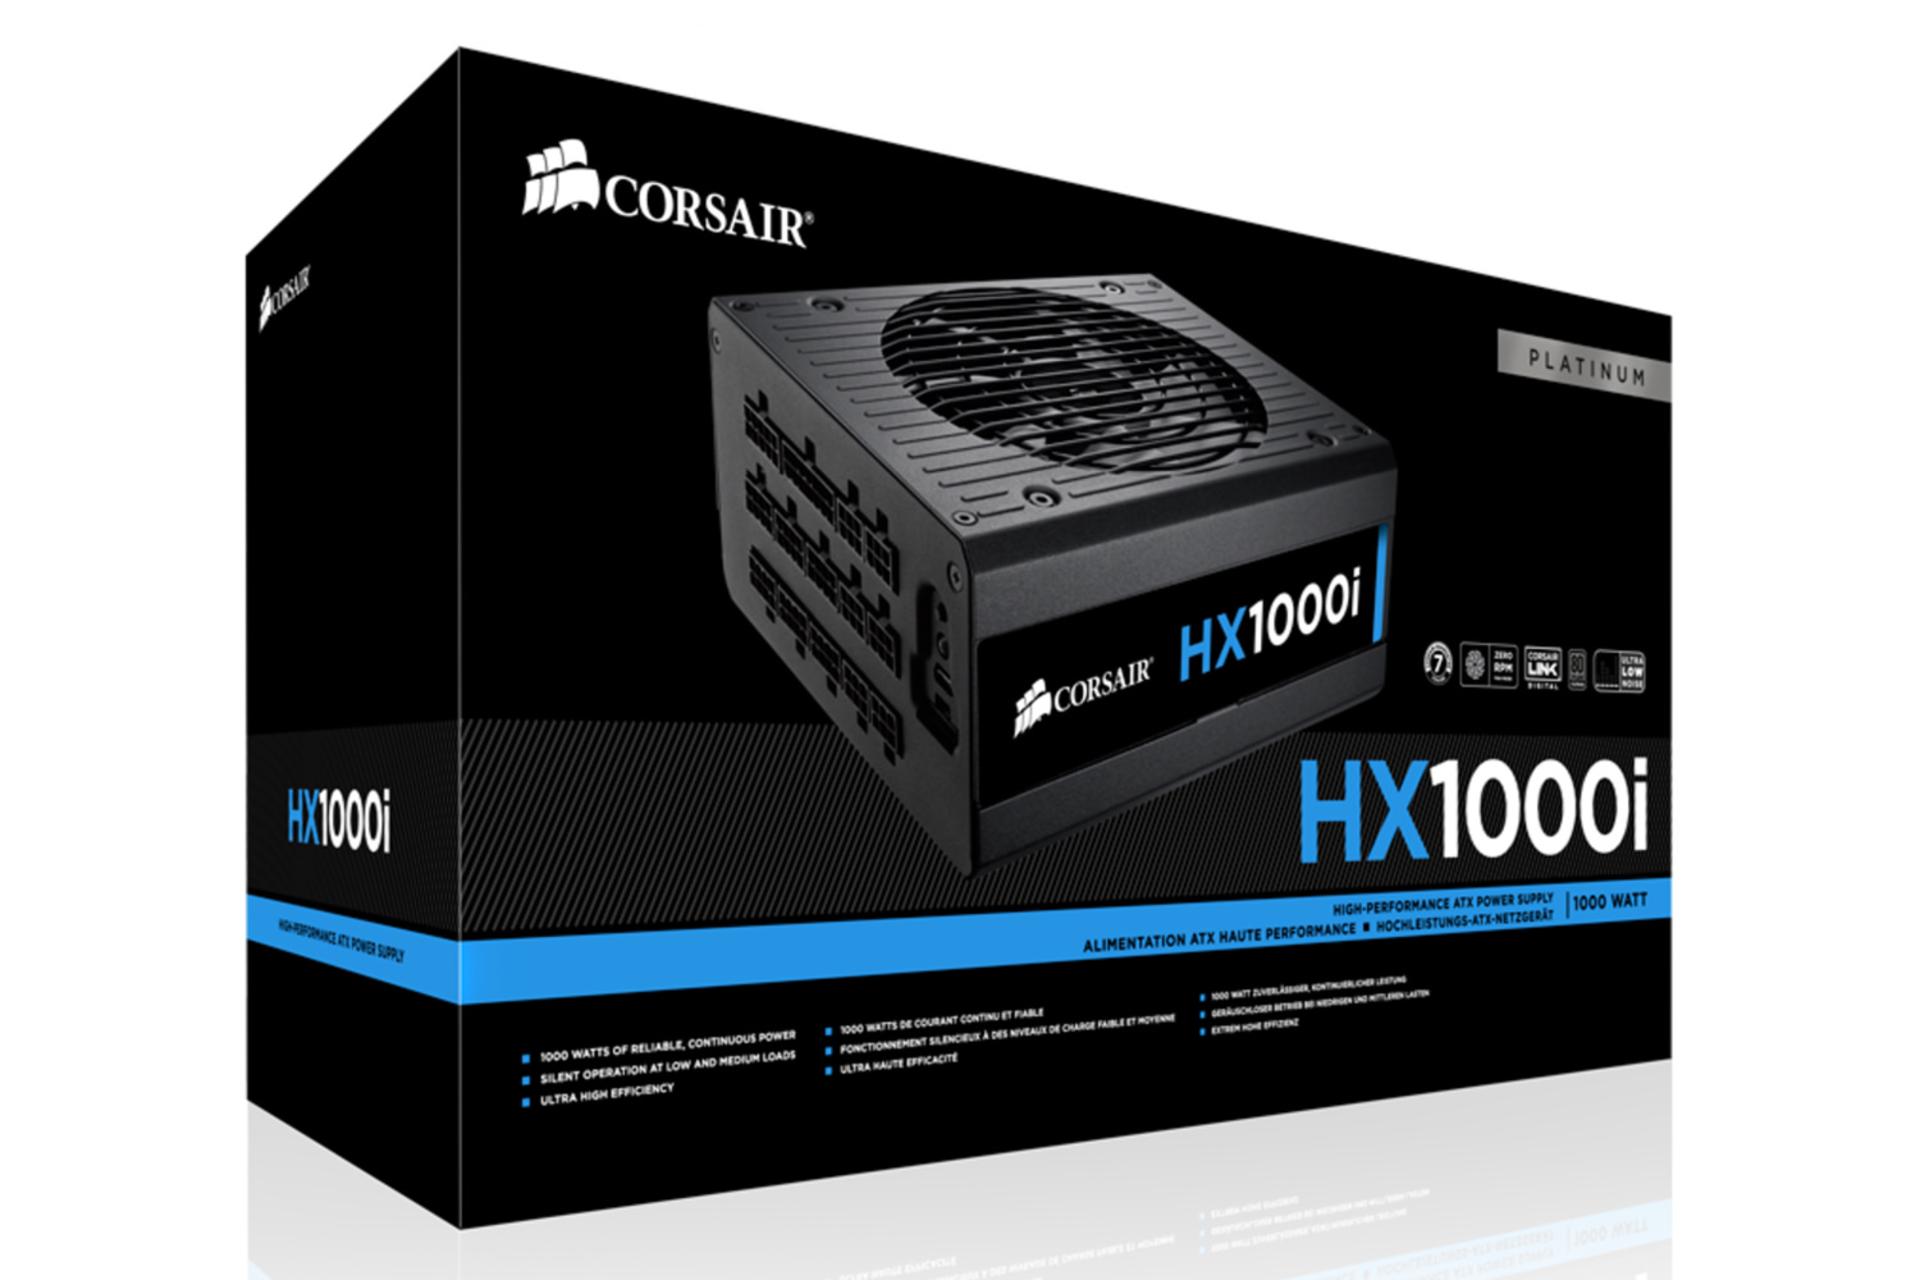 جعبه پاور کامپیوتر کورسیر HX1000i Platinum با توان 1000 وات